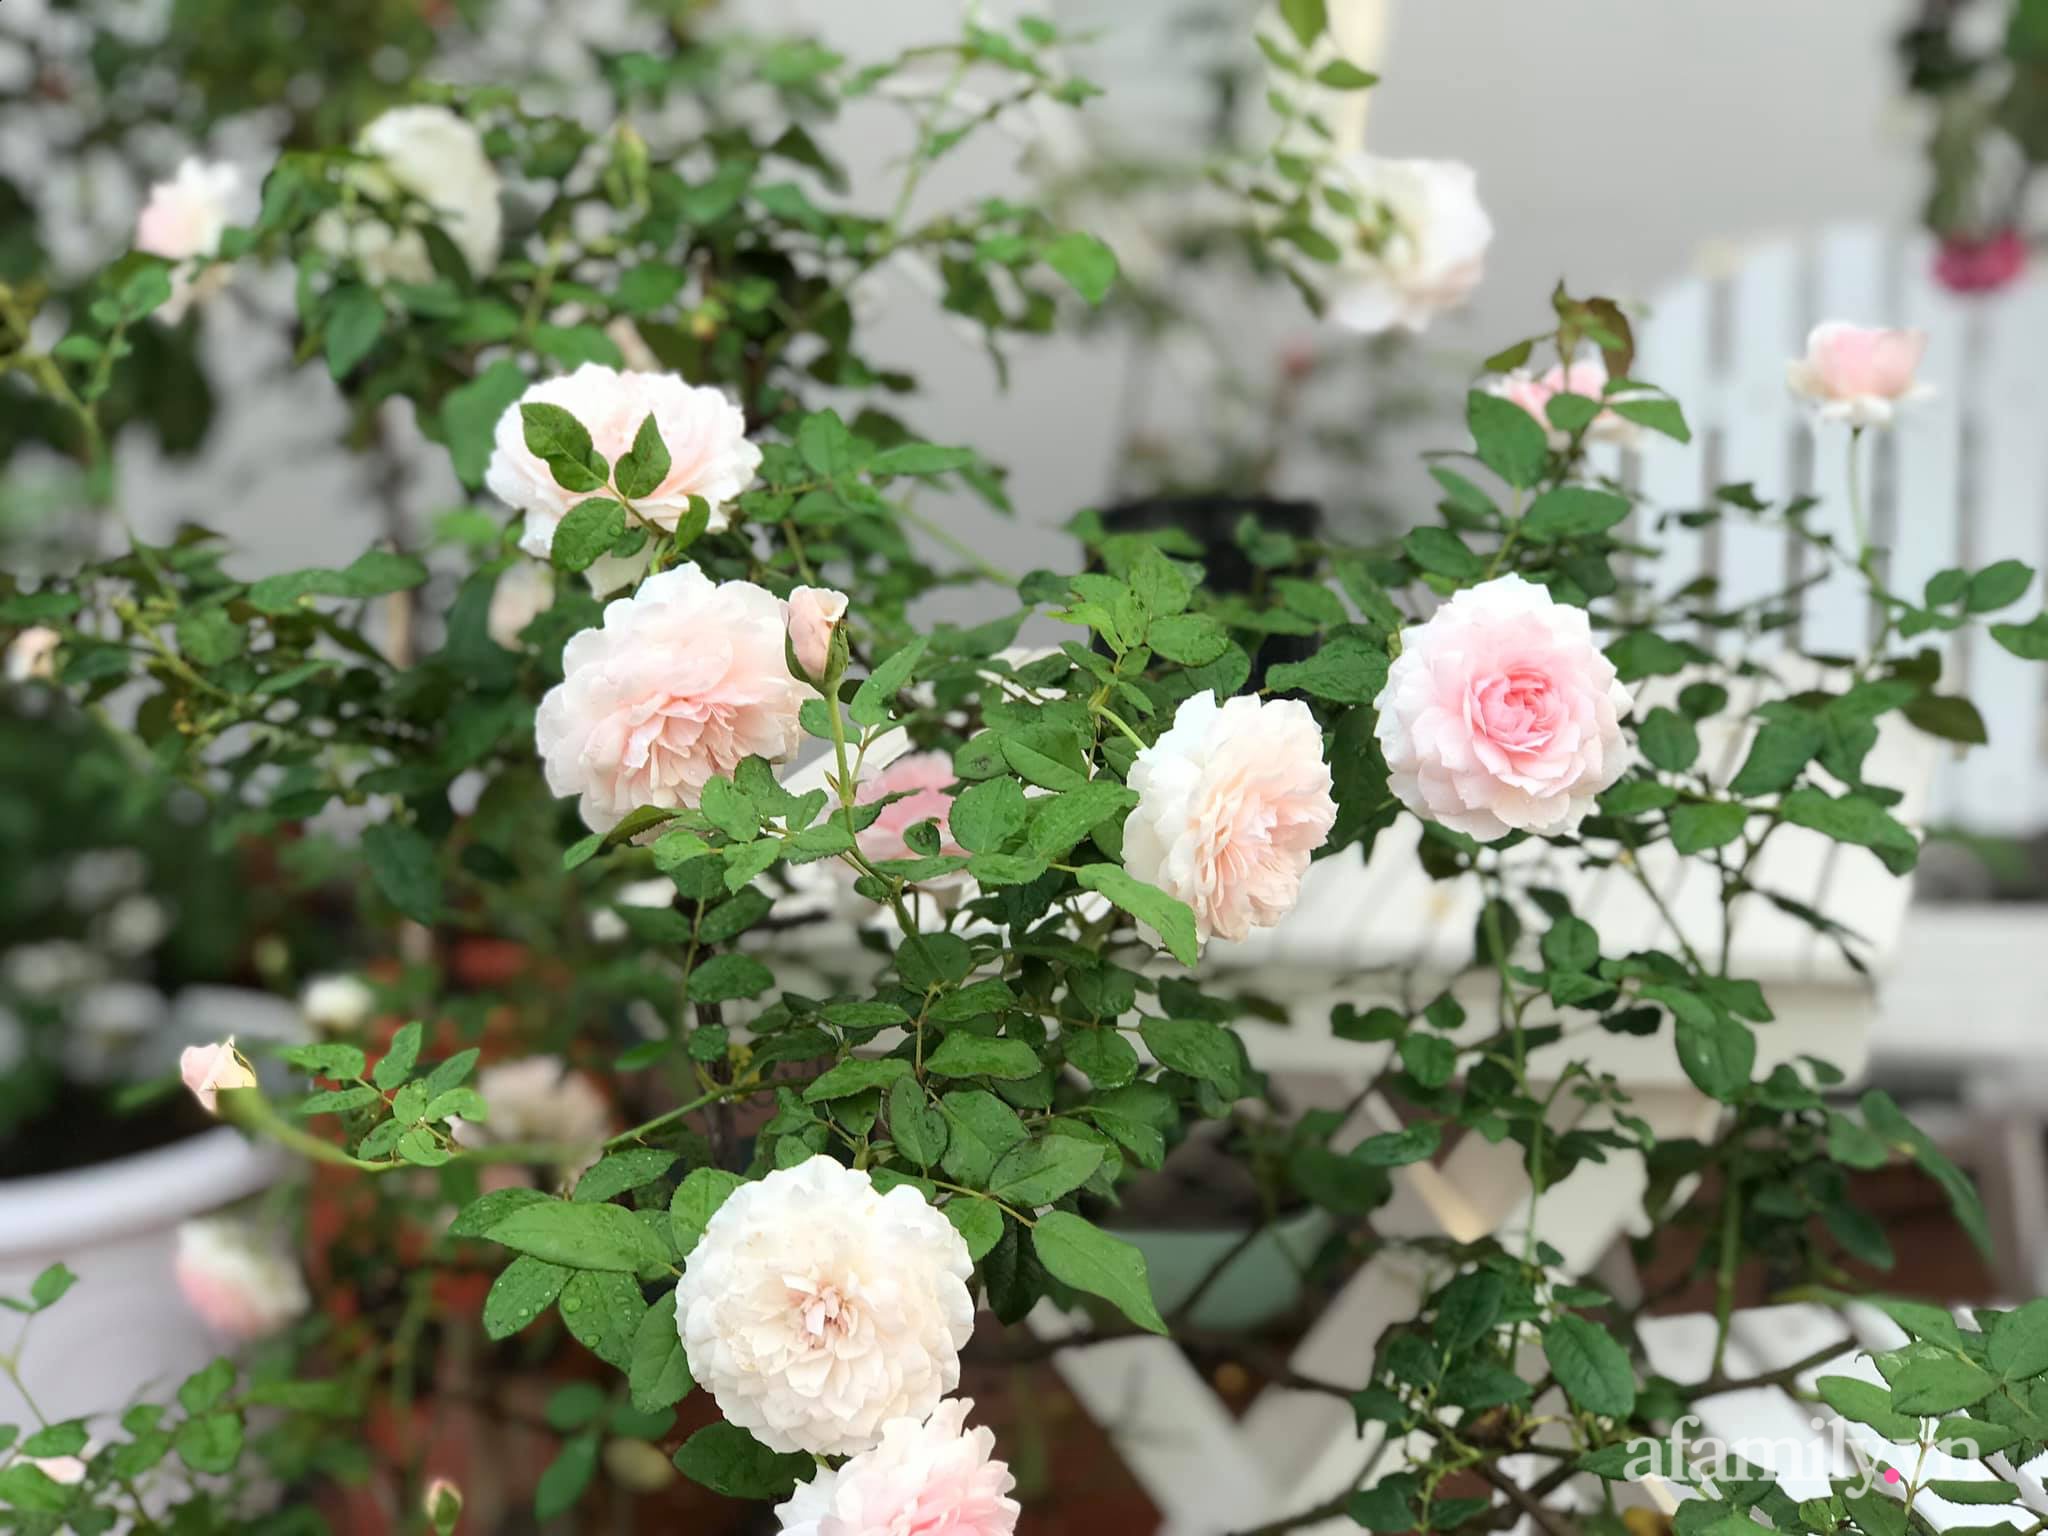 Ngày 20/11 ghé thăm vườn hồng ngát hương dịu dàng khoe sắc trên sân thượng của cô giáo dạy Văn ở Nha Trang - Ảnh 10.